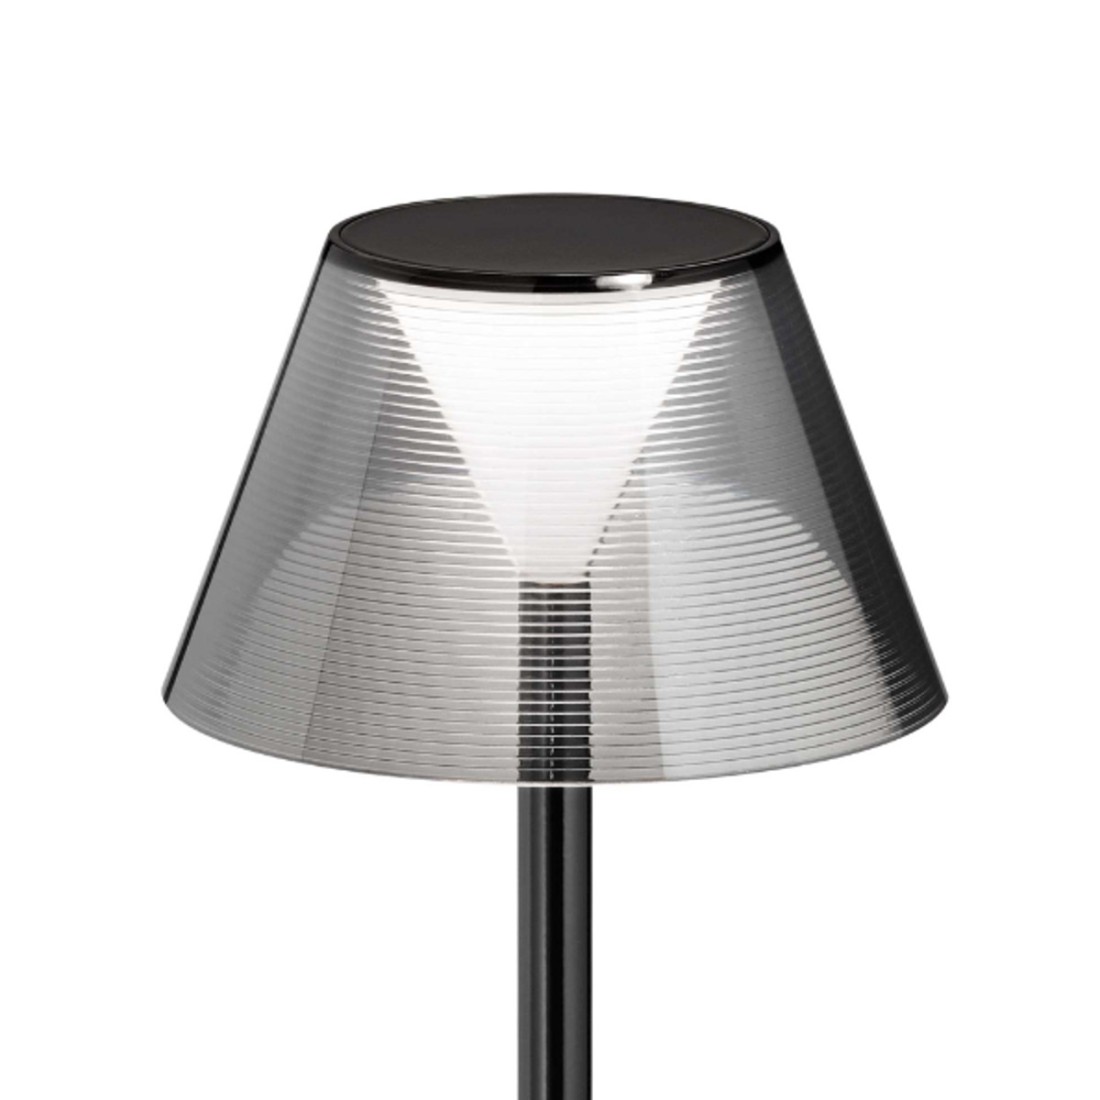 Ideal Lux LOLITA 286716 Lampe à batterie LED, noire